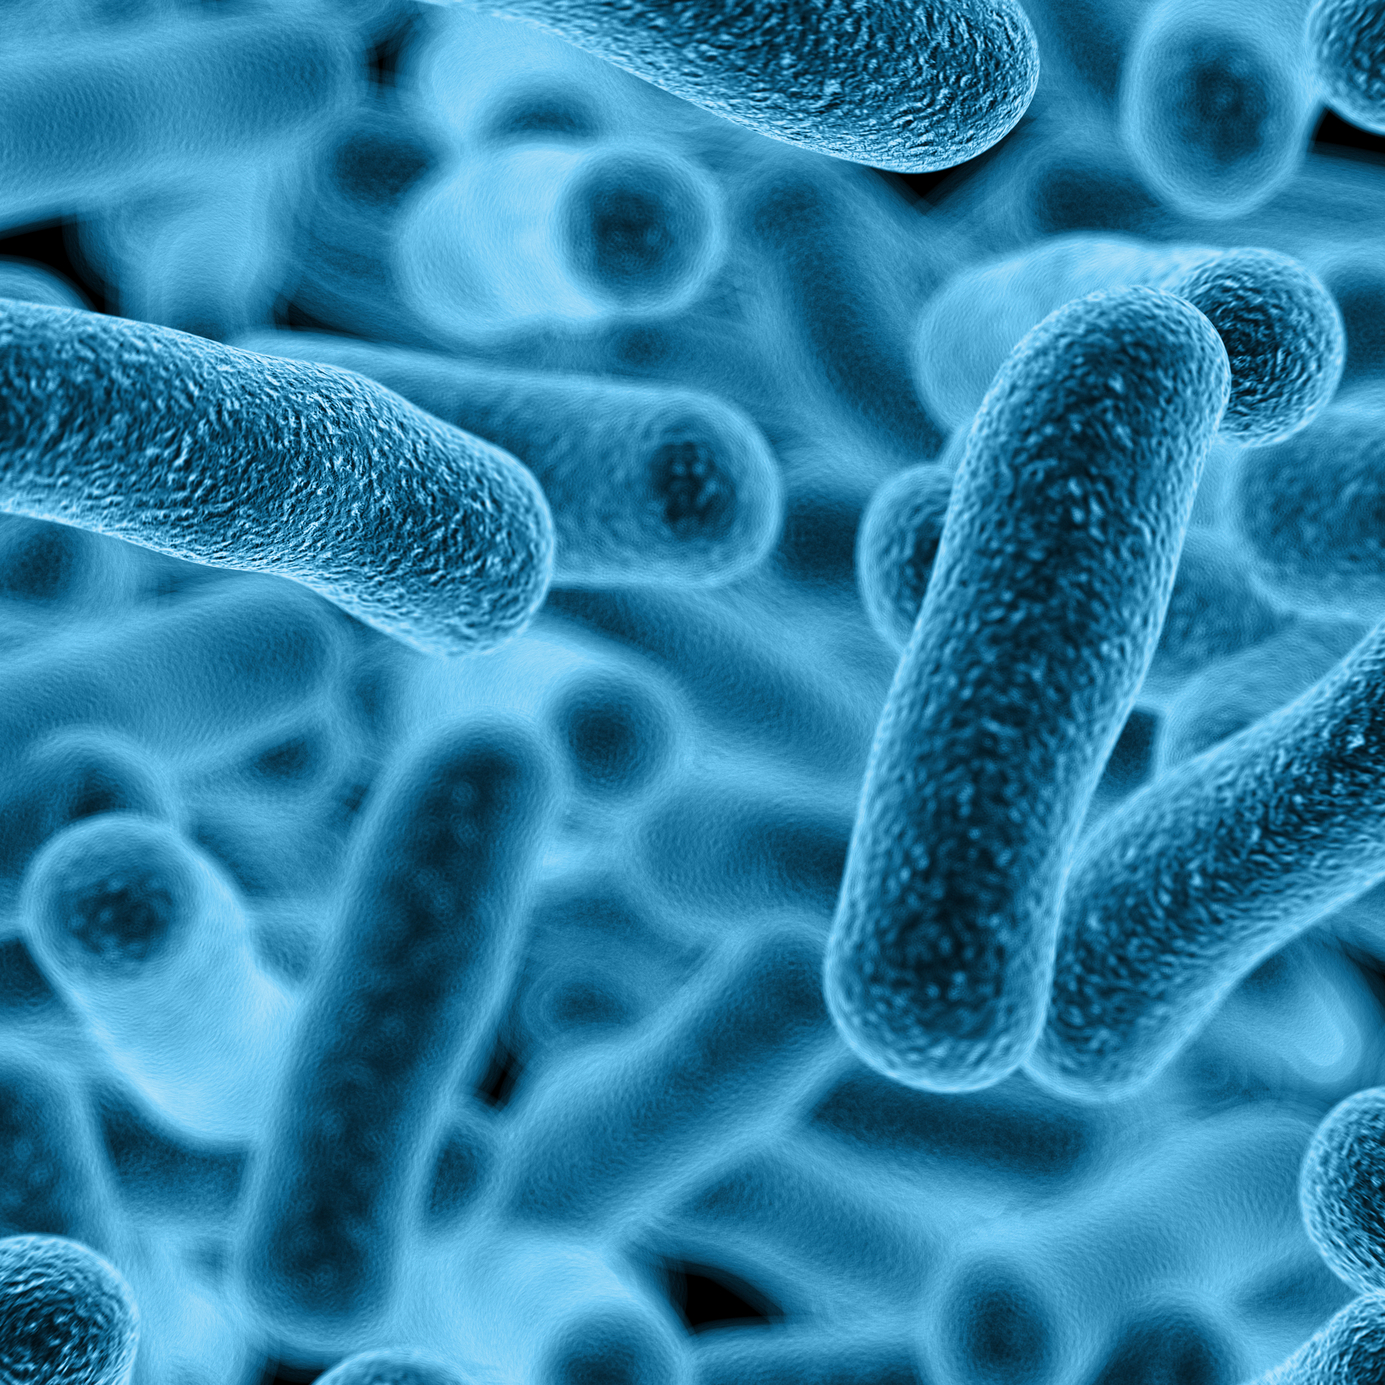 e coli bacterium kezelése házilag 2019